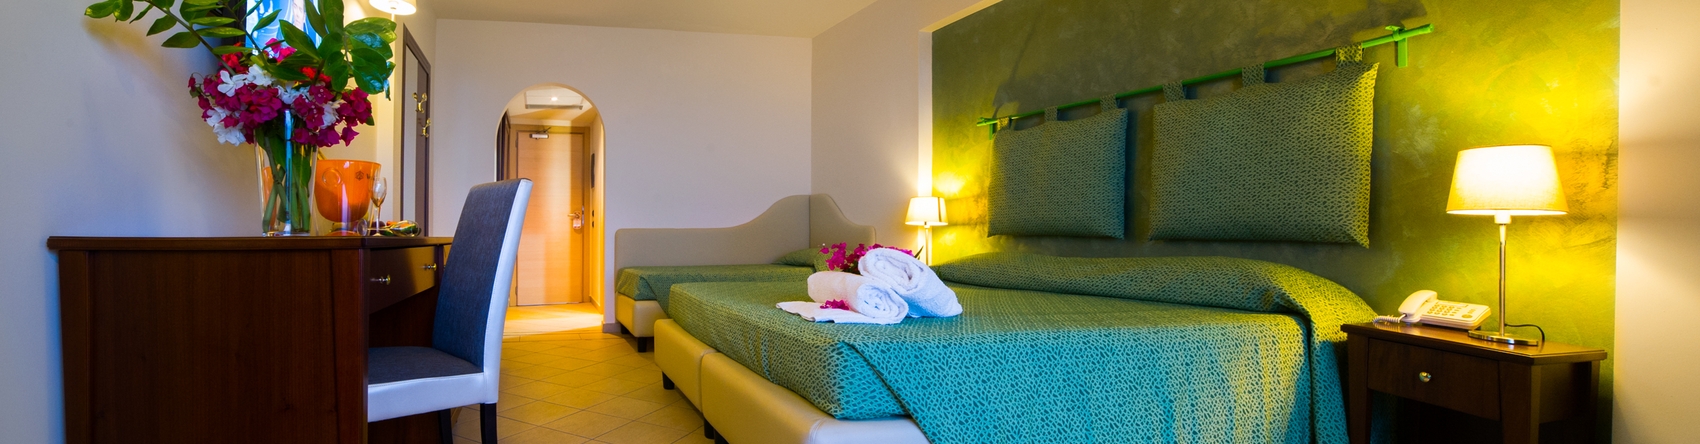 L'Hotel ELIHOTEL dispone di 70 camere curate nei minimi dettagli